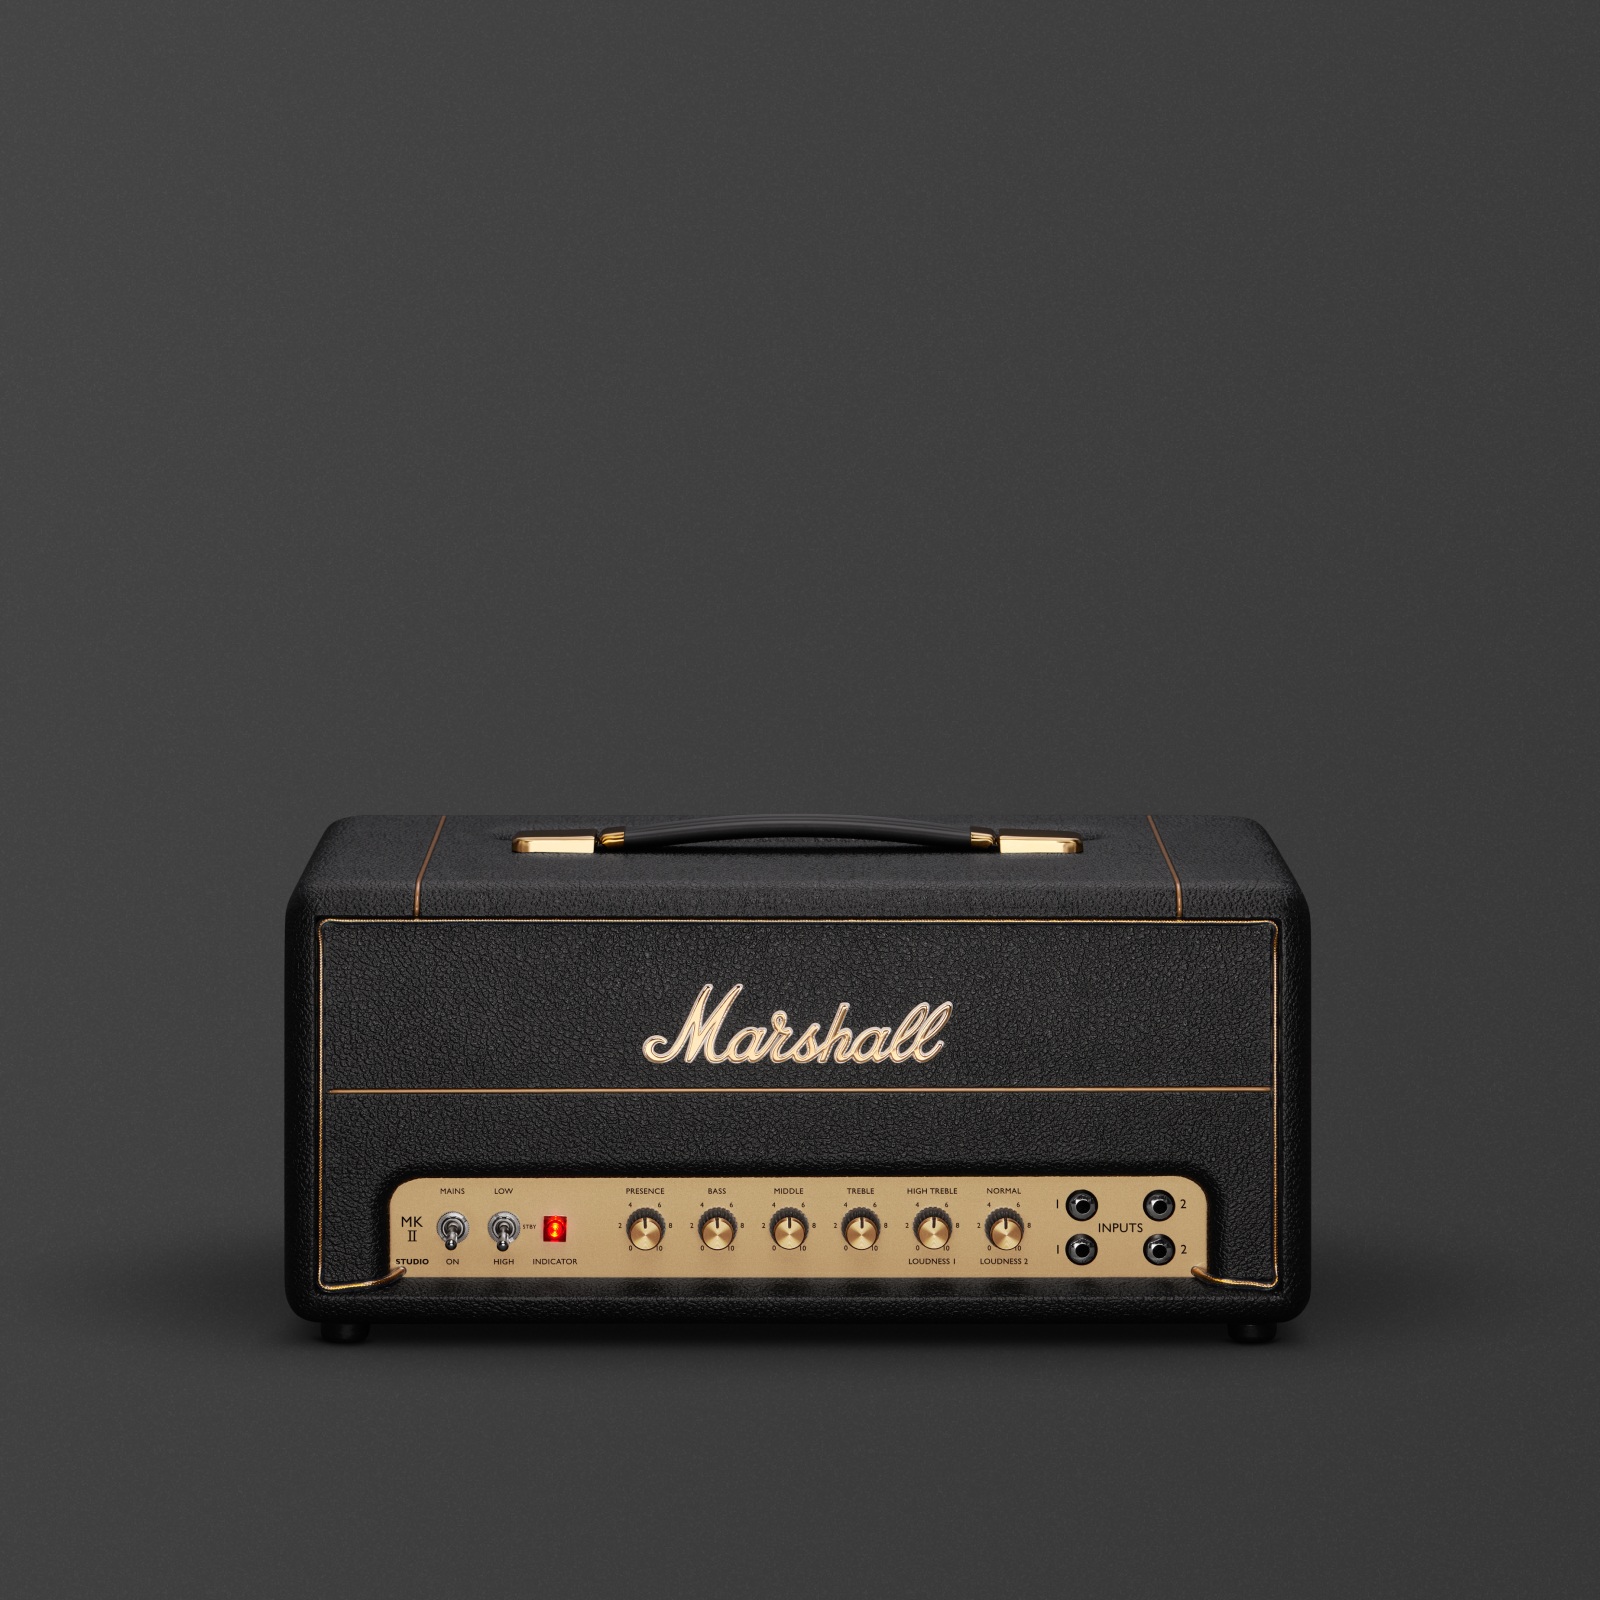 Marshall Studio Vintage Headアンプ。